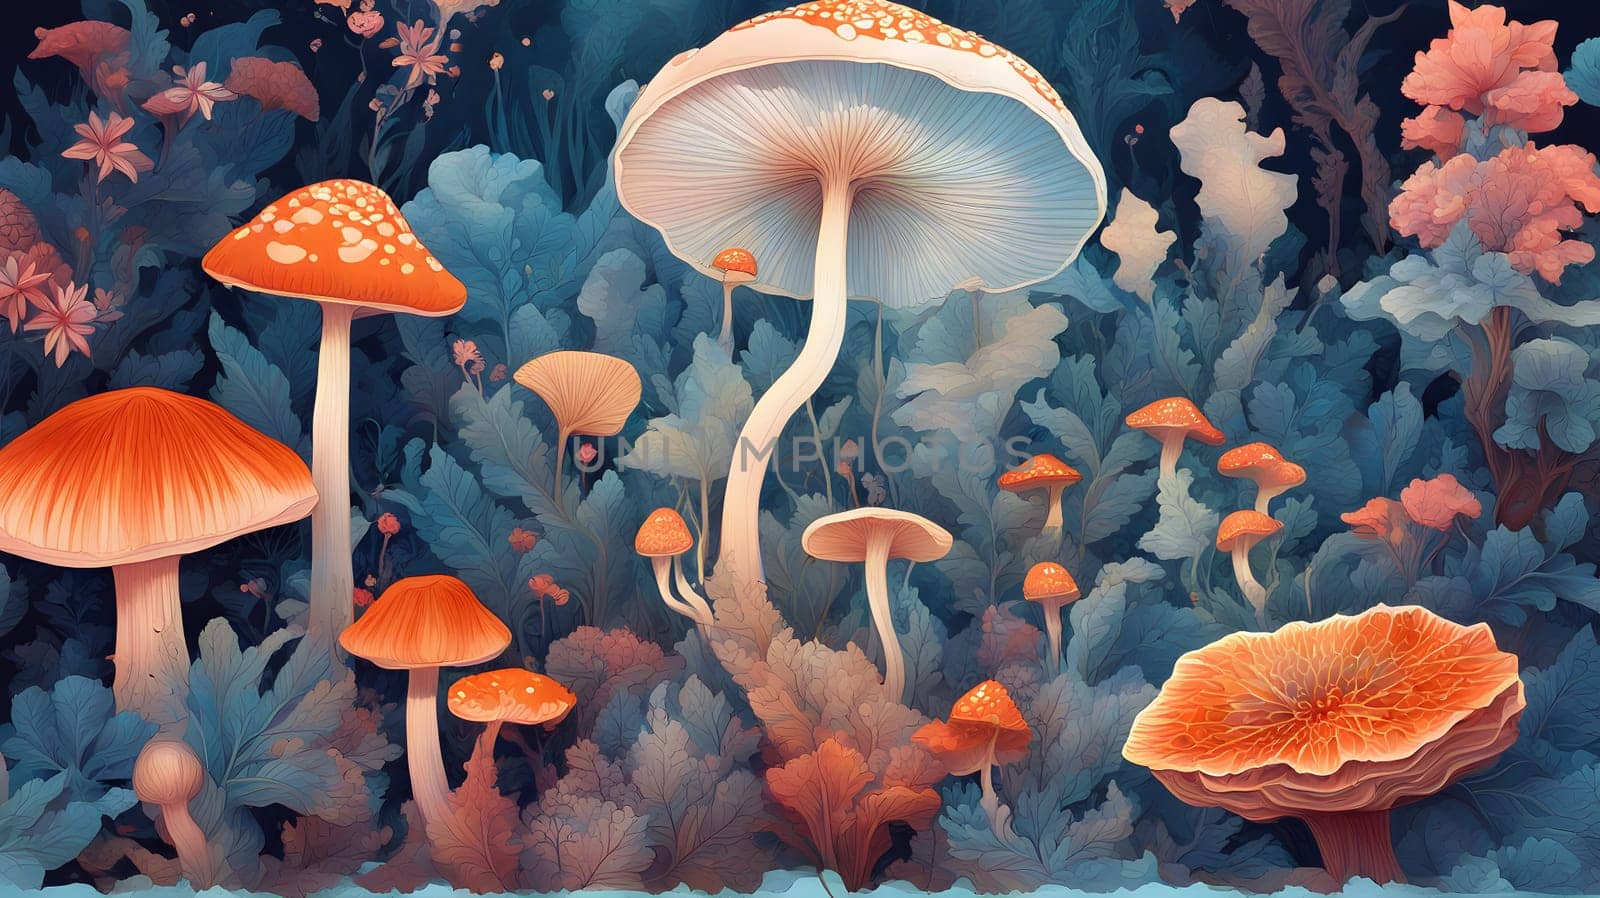 Enchanted Forest Mushrooms Illustration by rostik924